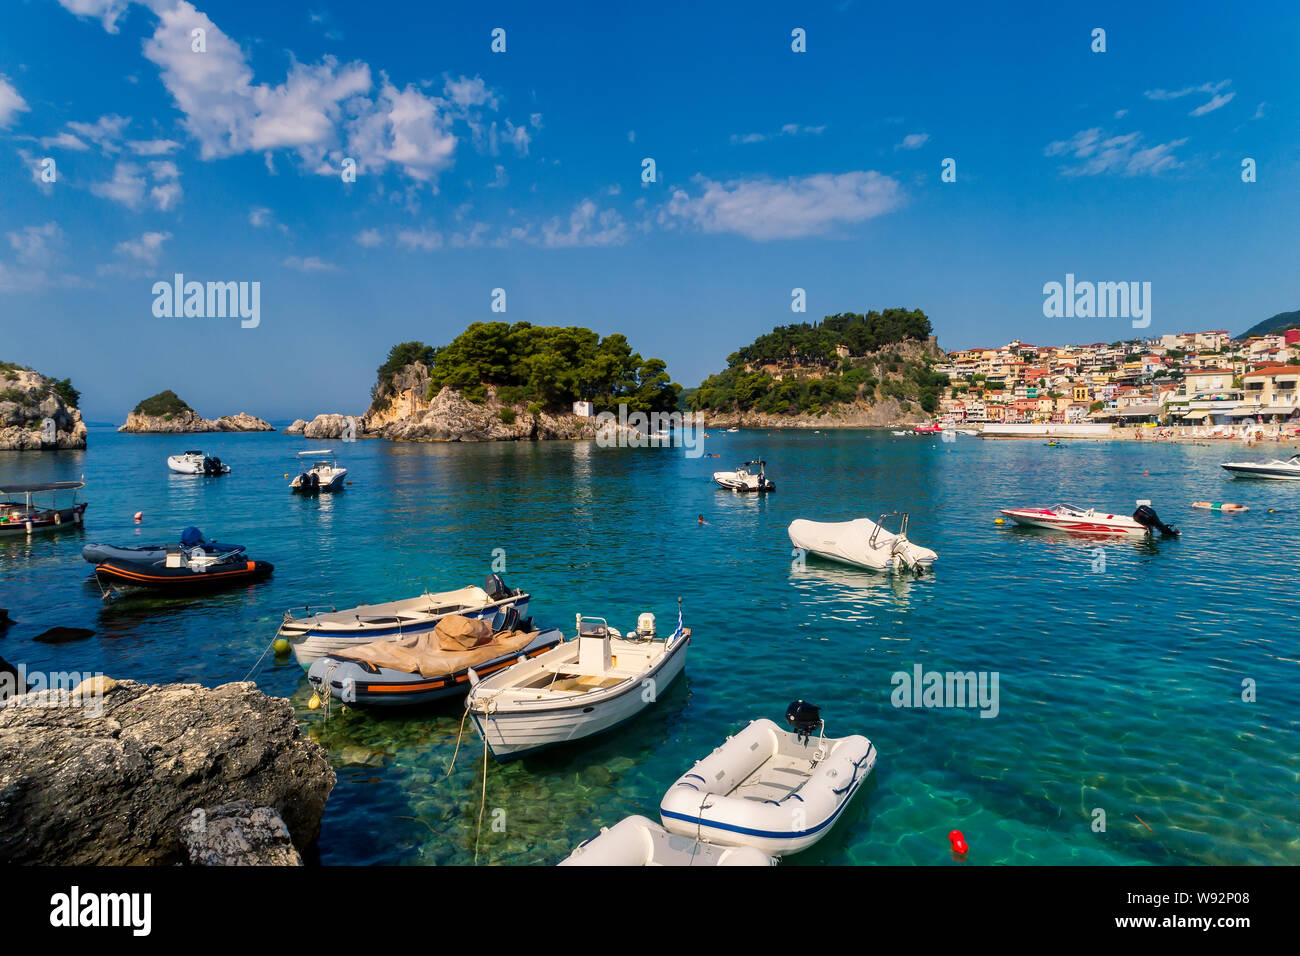 Antenne Stadtbild Blick auf die Küstenstadt Parga, Griechenland im Sommer. Kristall Wasser natürliche Landschaft und schöne architektonische Bauten ne Stockfoto